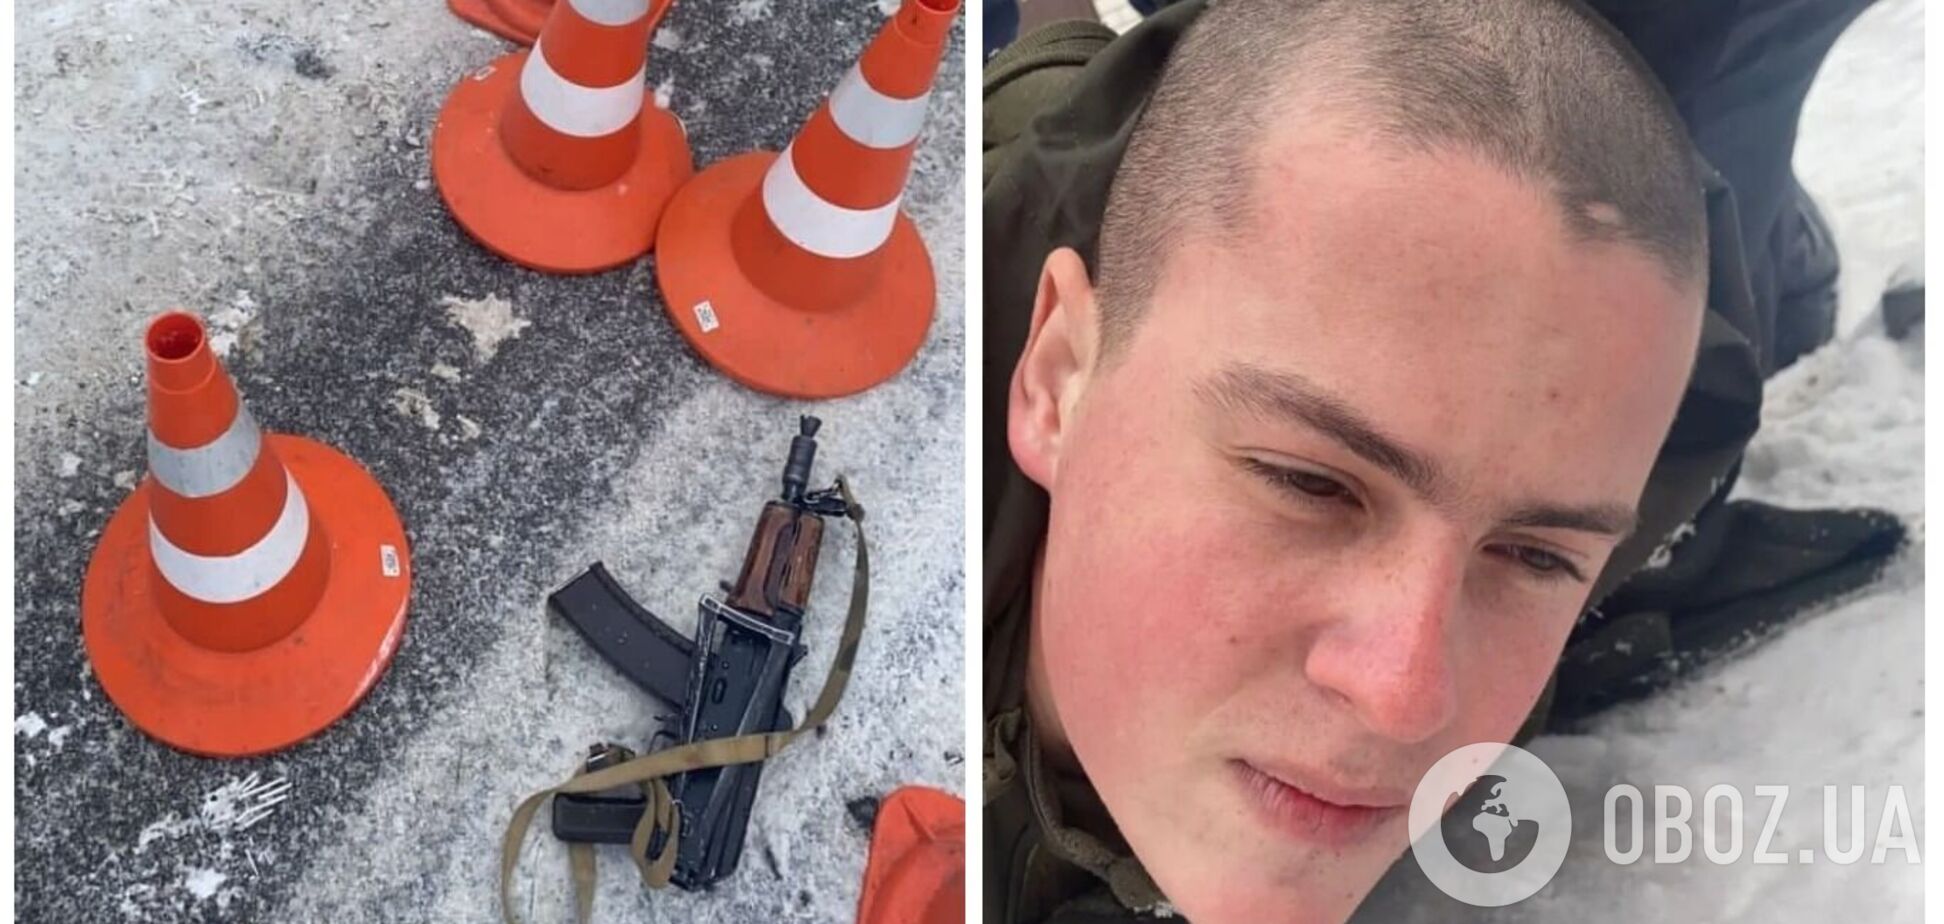 В Днепре 20-летний солдат устроил стрельбу по сослуживцам: пять человек погибли, много раненых. Фото и видео